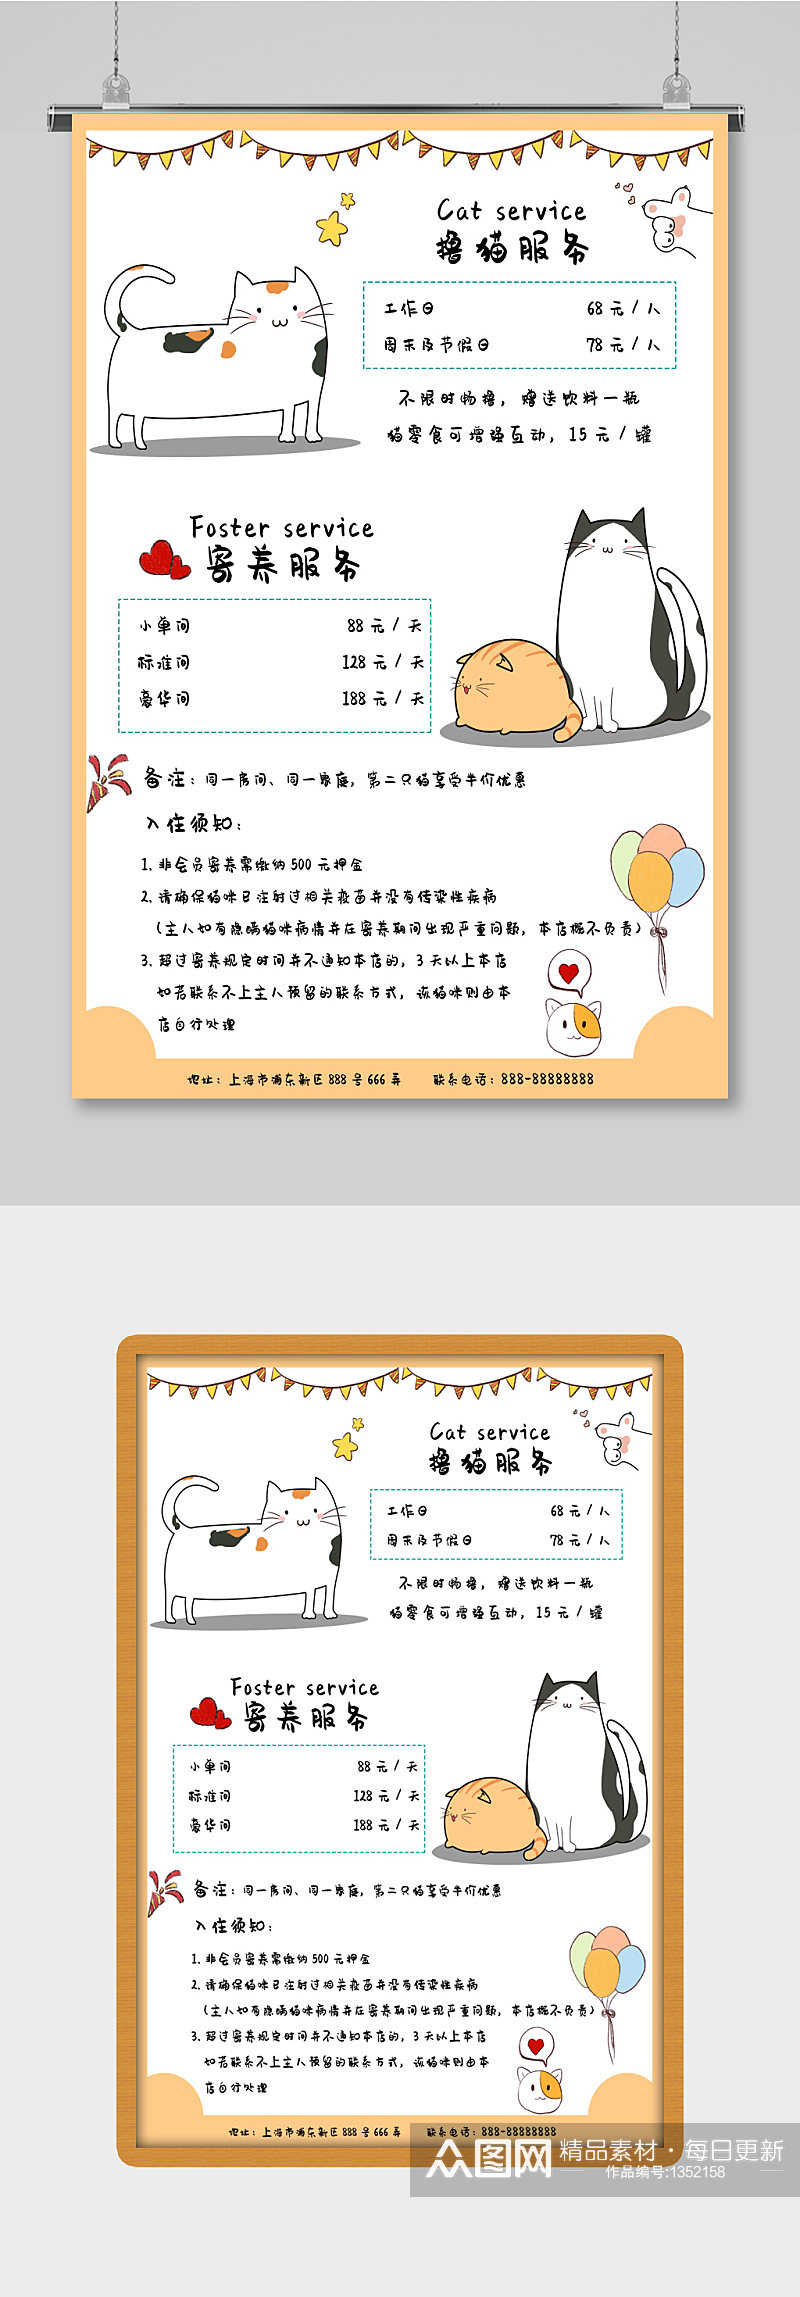 猫咪生活馆服务项目介绍可爱卡通海报素材